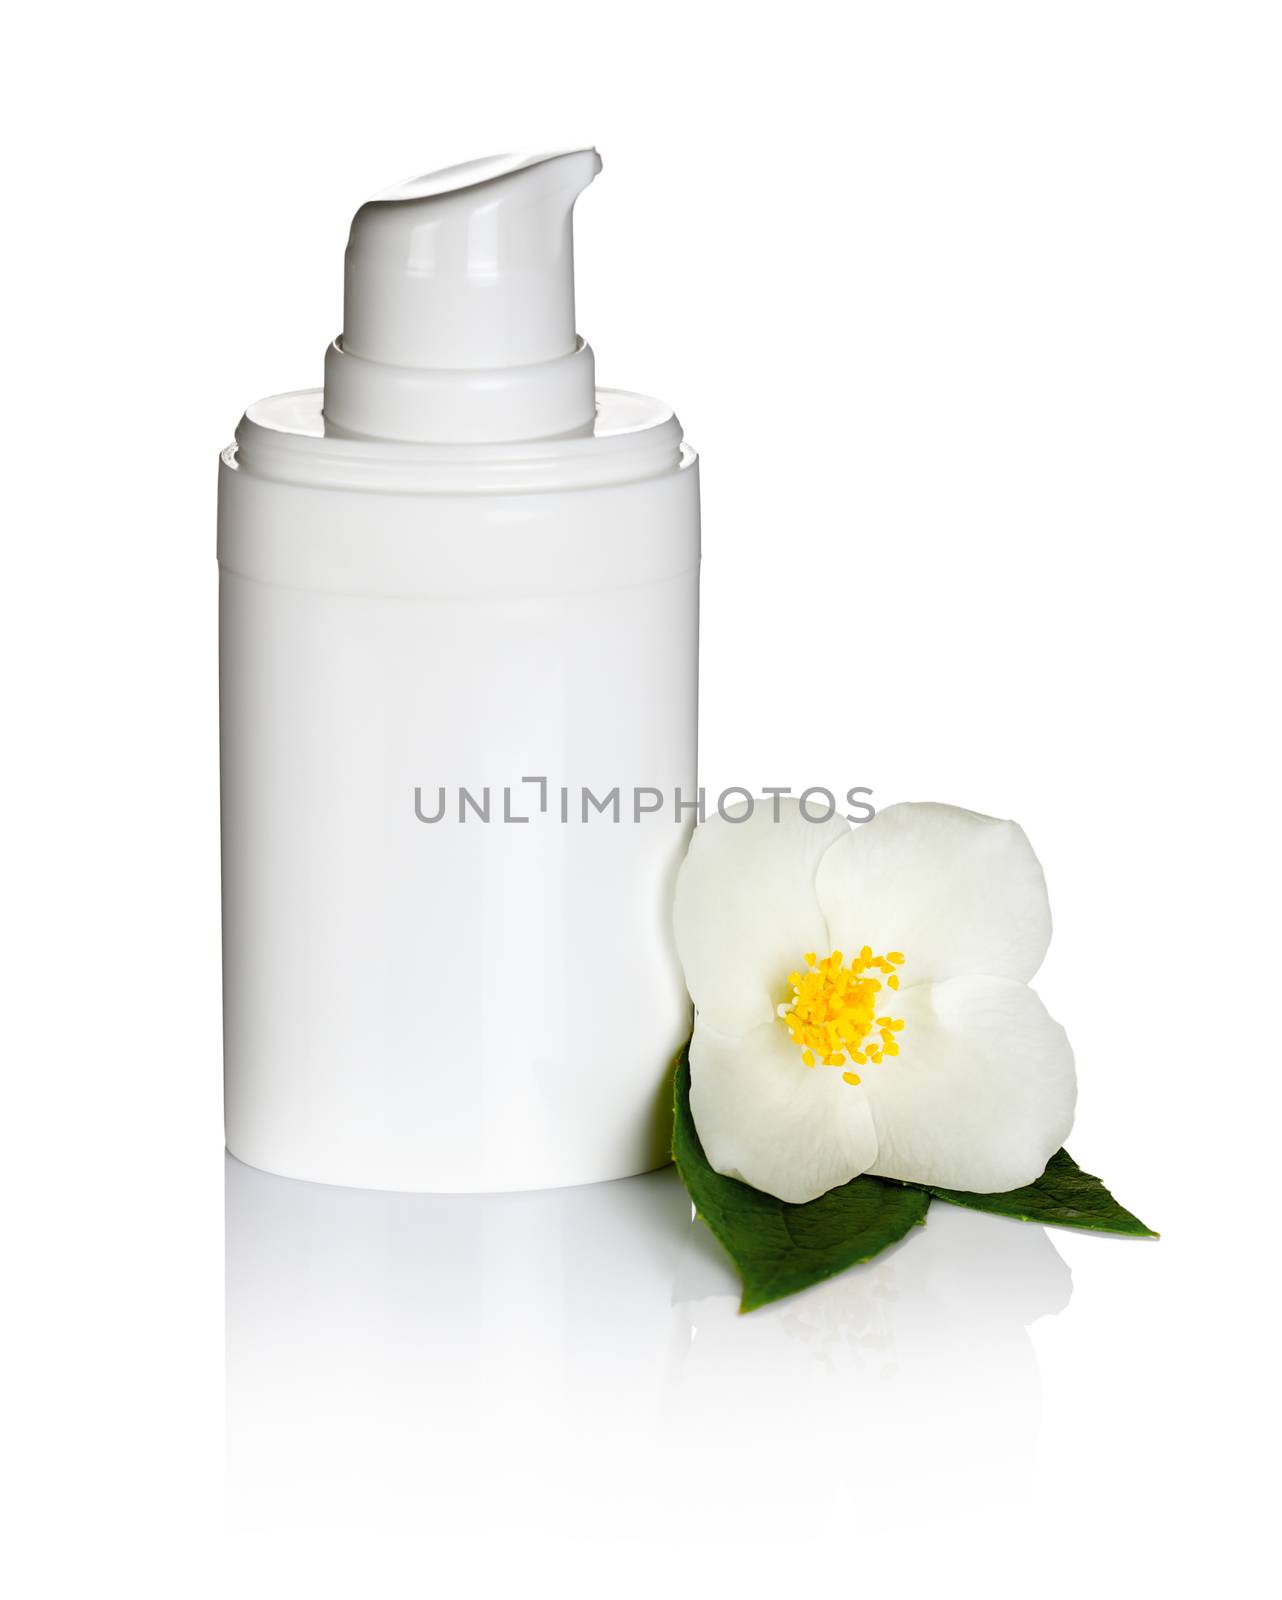 Jasmine cream with jasmine flower on white background